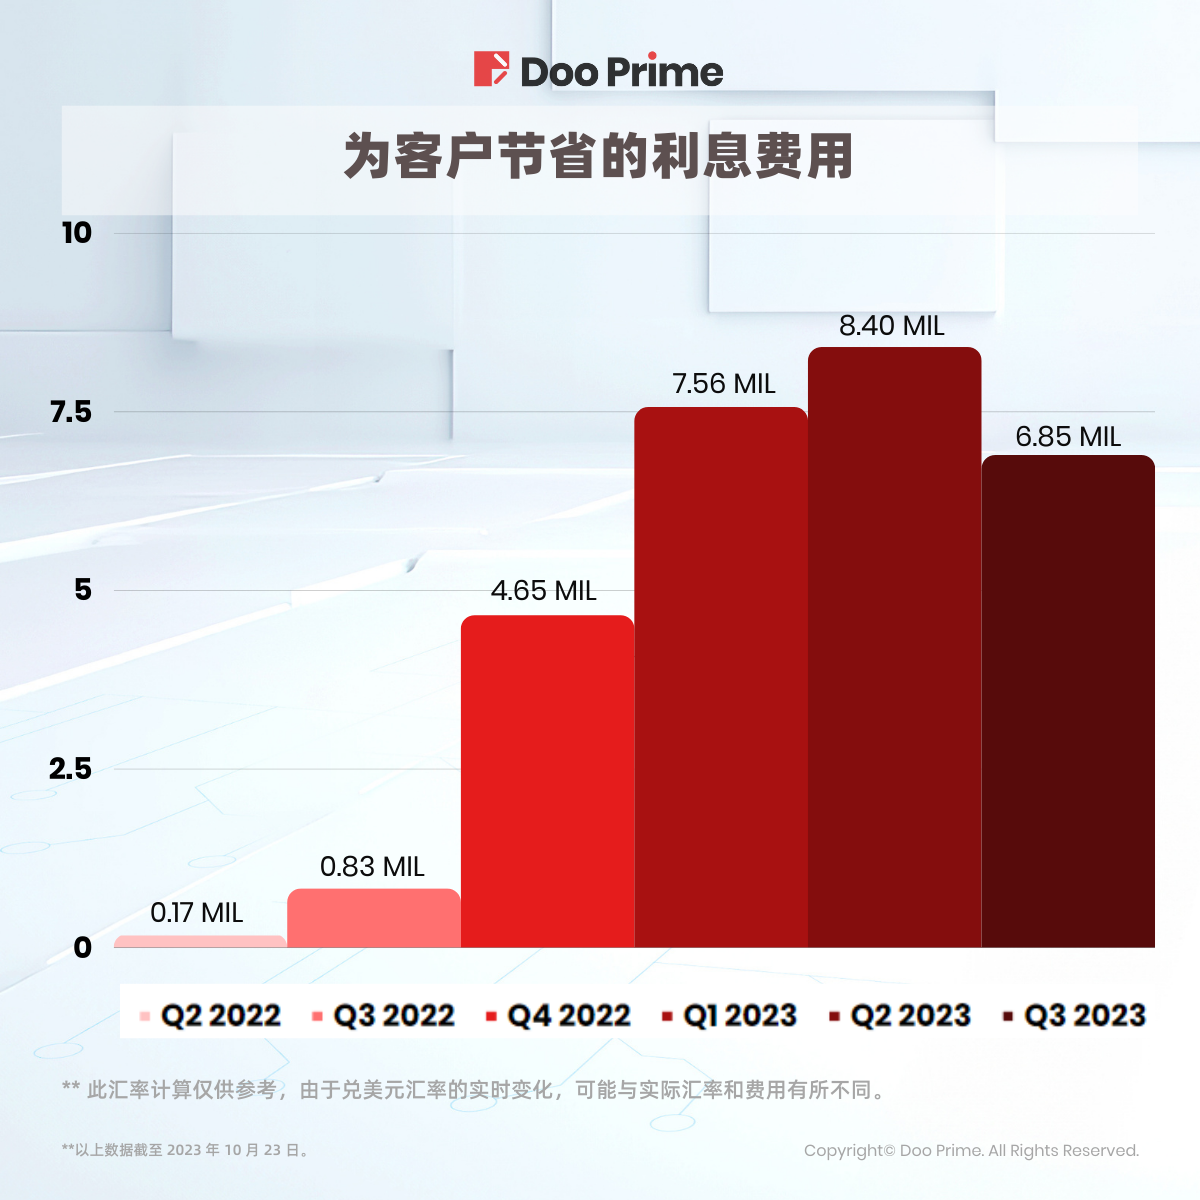 精彩活动 | 季度回顾： Doo Prime 免息活动助力投资者应对日元波动 